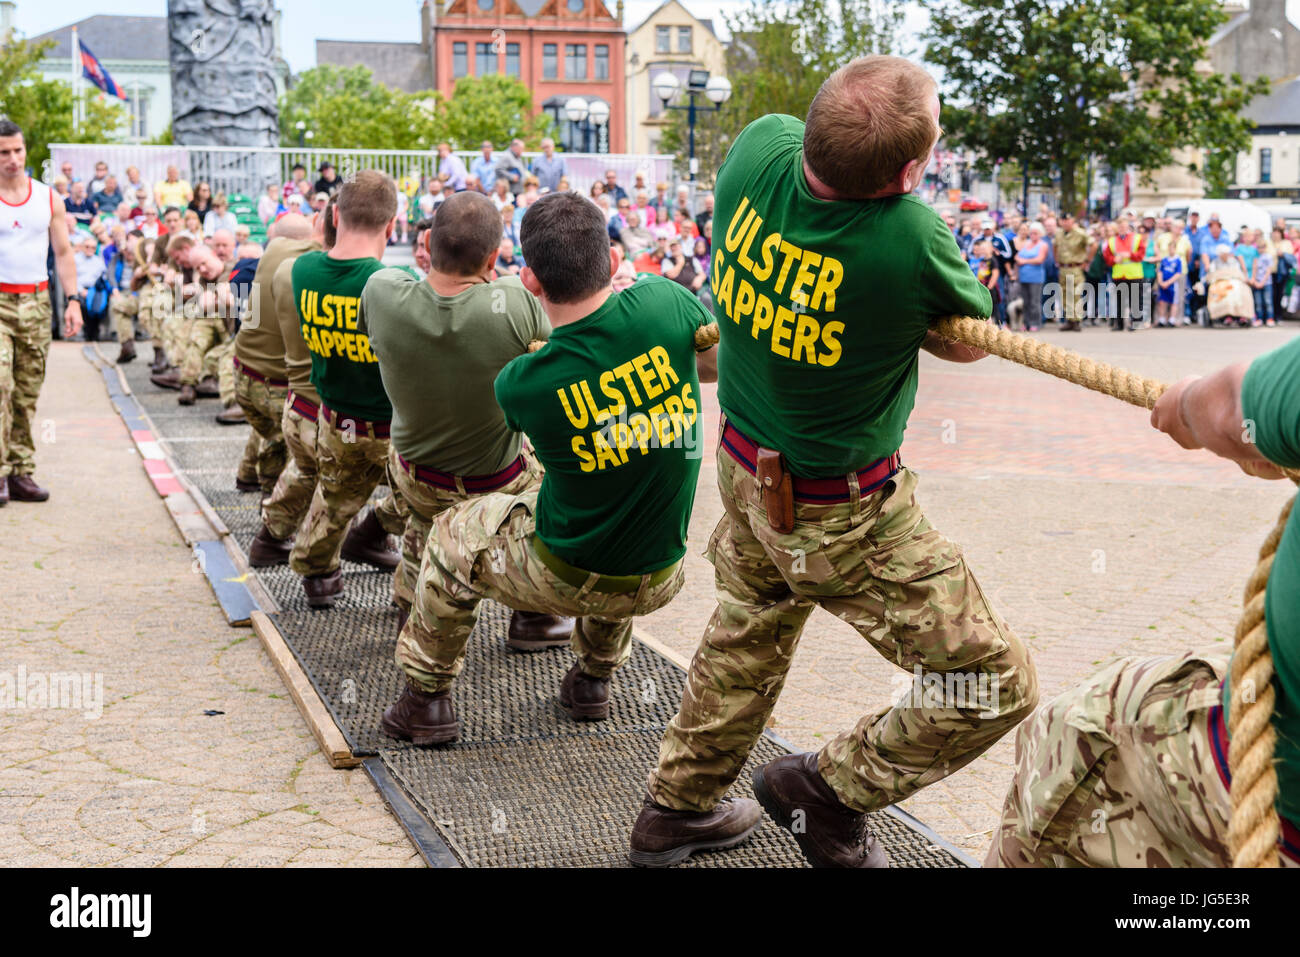 Soldati di prendere parte a un rimorchiatore-o-guerra alla prova di resistenza. Foto Stock